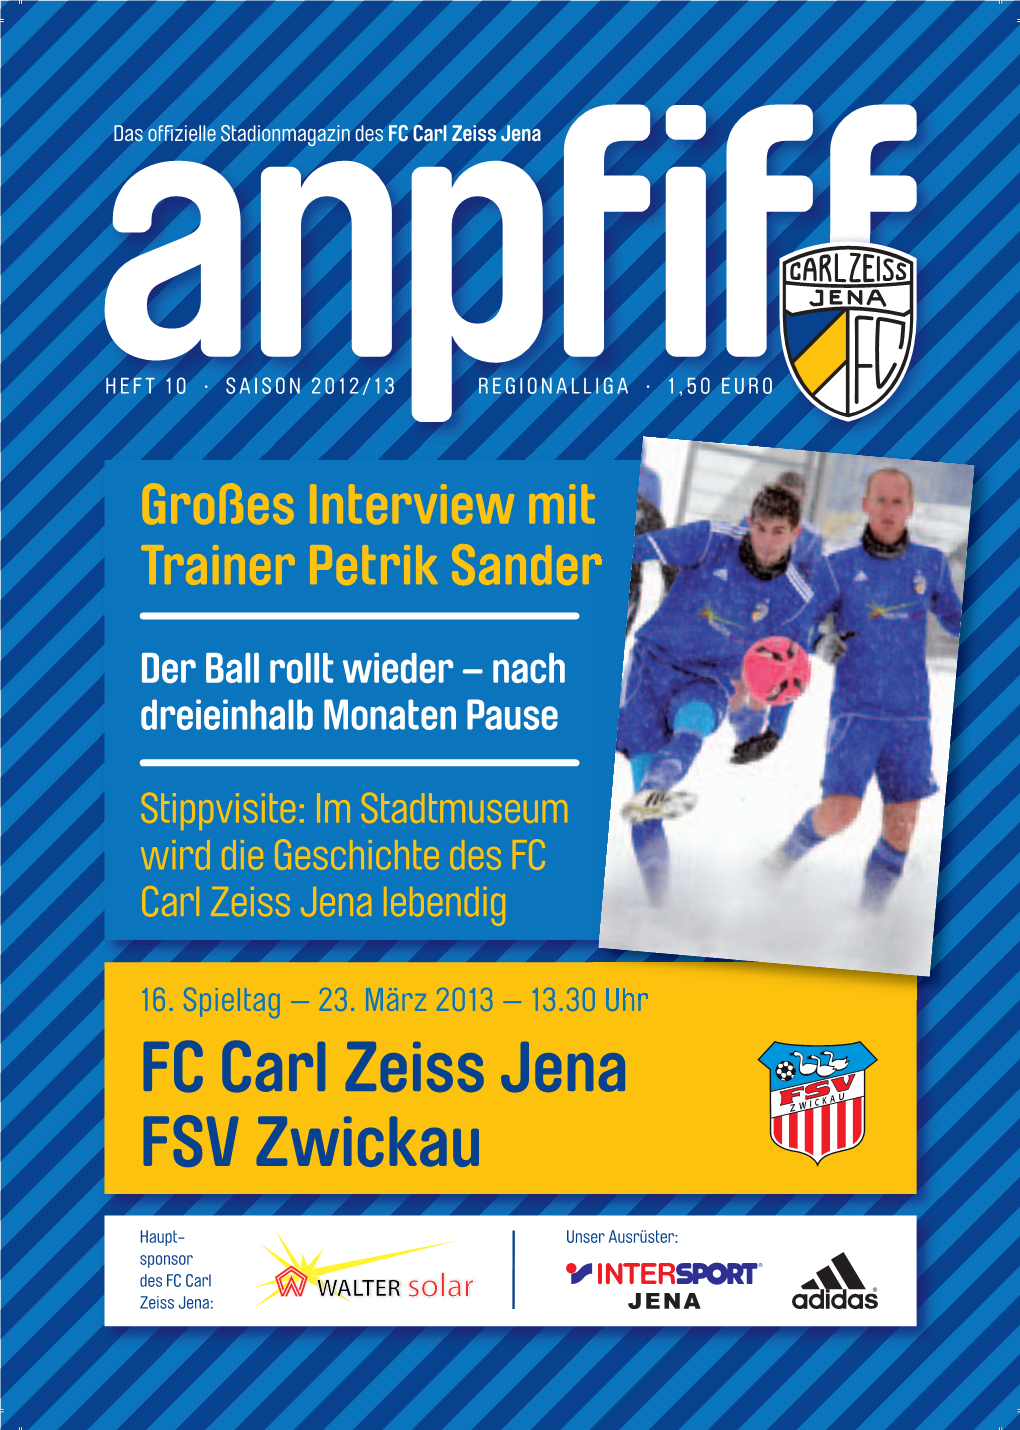 FC Carl Zeiss Jena FSV Zwickau